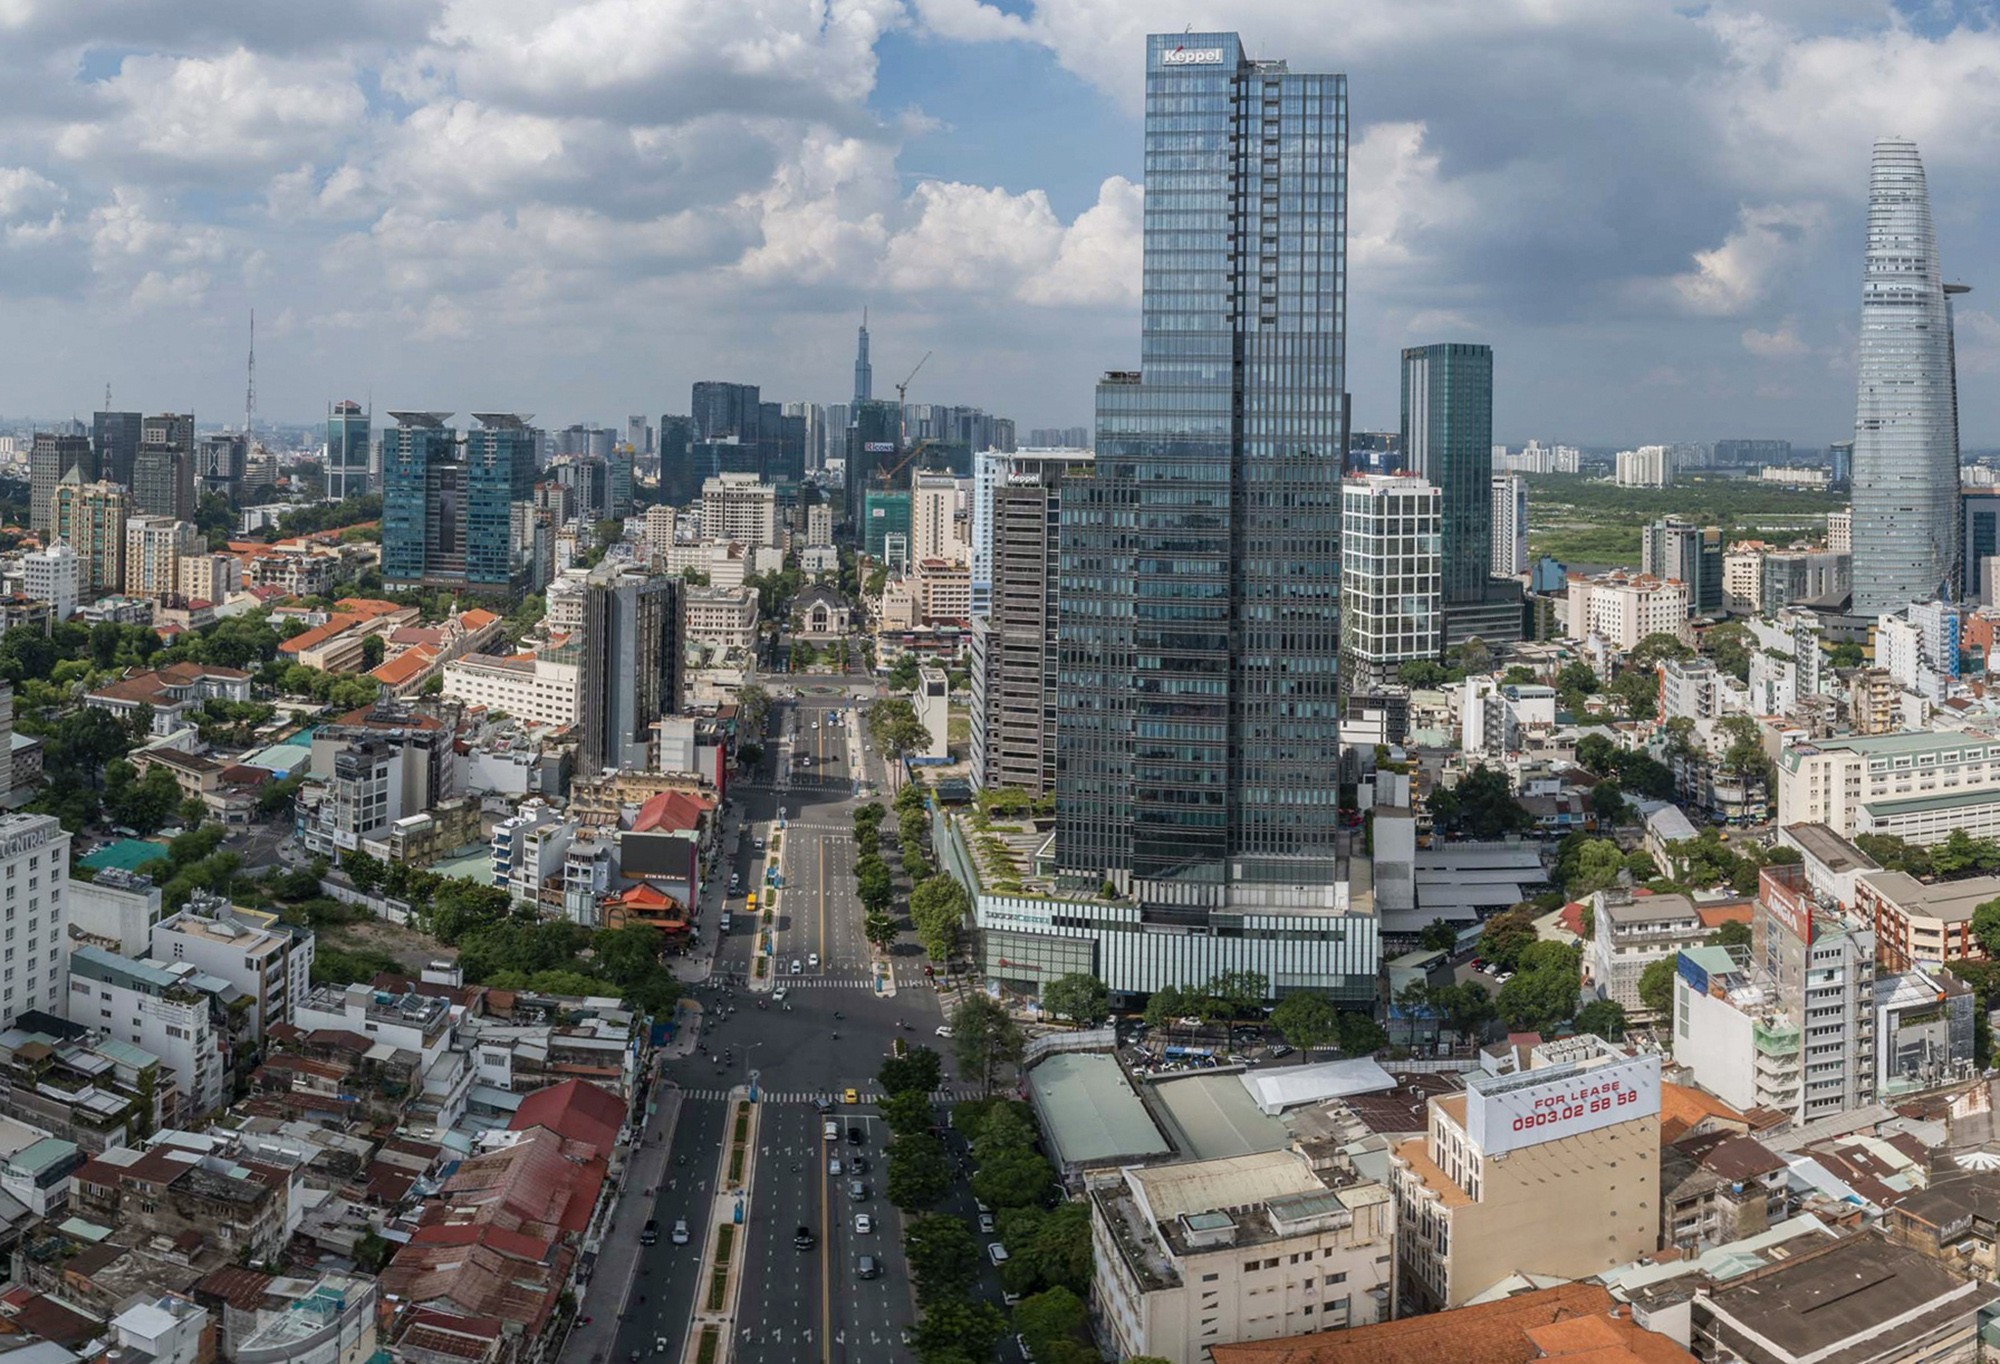 Saigon Centre 2 nằm tại góc đường Lê Lợi – Nam Kỳ Khởi Nghĩa có chiều cao 193,7m, quy mô 45 tầng nổi, diện tích sàn 13.000m2. Sau khi Saigon Centre giai đoạn 1 được đưa vào hoạt động từ năm 1996, nhà đầu tư Keppel Land đã tiếp tục triển khai dự án án Saigon Centre 2. Toà nhà có thiết kế đơn giản nhưng sang trọng với gam màu xanh chủ đạo từ kính, mang đến không gian hiện đại.